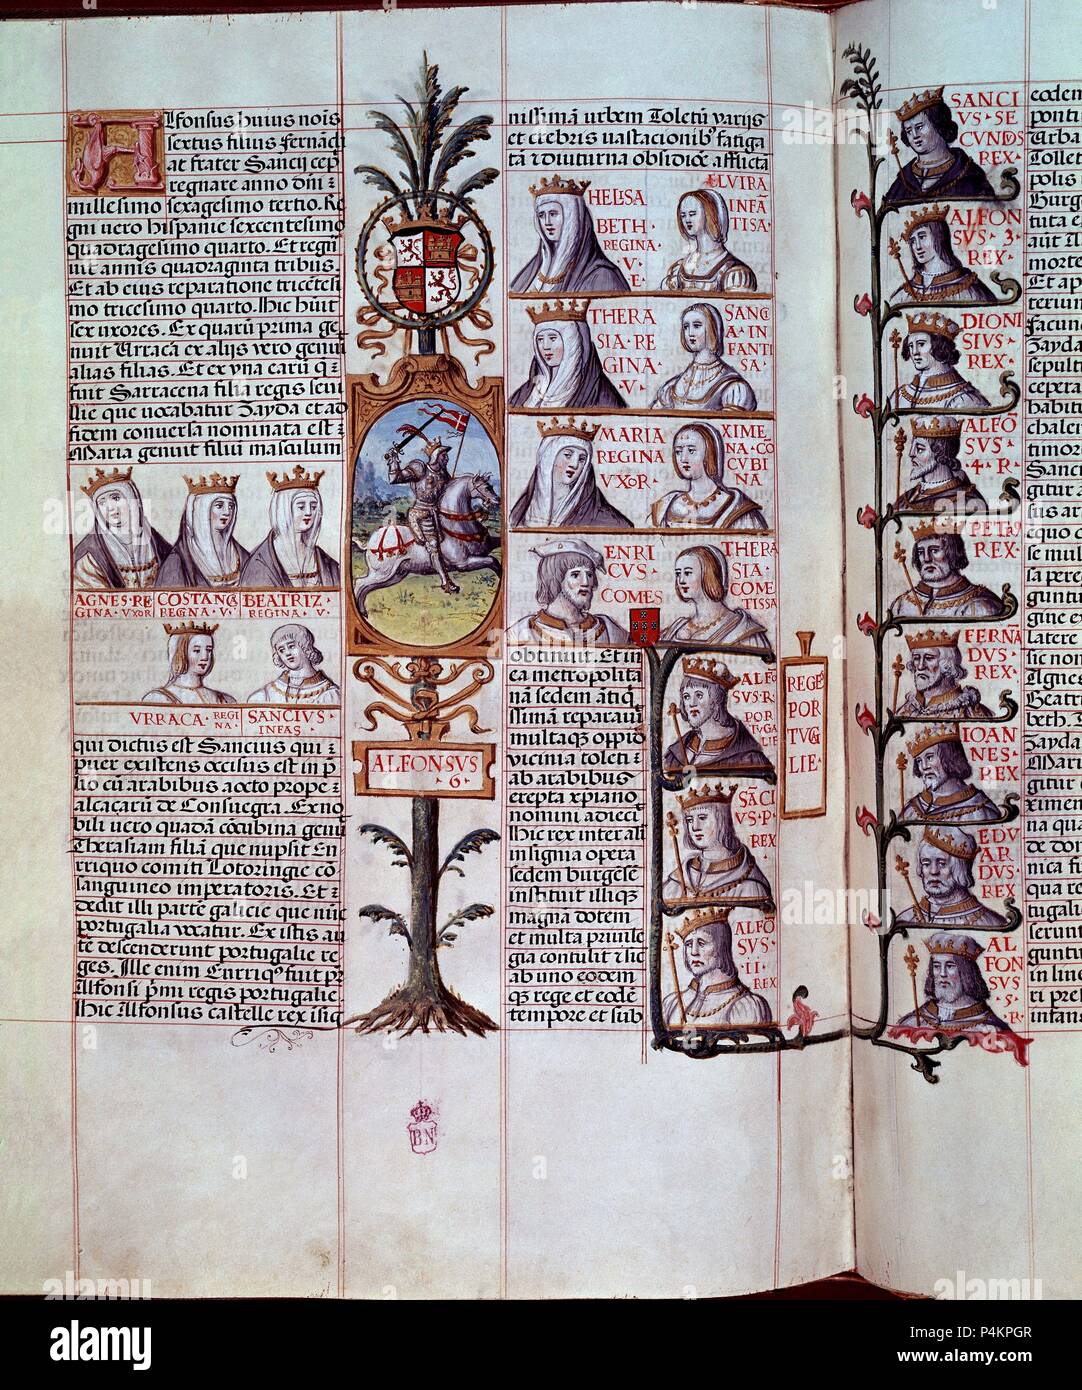 GENEALOGIA DE LOS REYES DE ESPAÑA - (PAGINA DE LOS REYES PORTUGUESES) - VIT 19-2-F29 V-30. Autor: Alonso de Cartagena (1385-1456). Lage: Biblioteca Nacional - COLECCION, MADRID, SPANIEN. Stockfoto